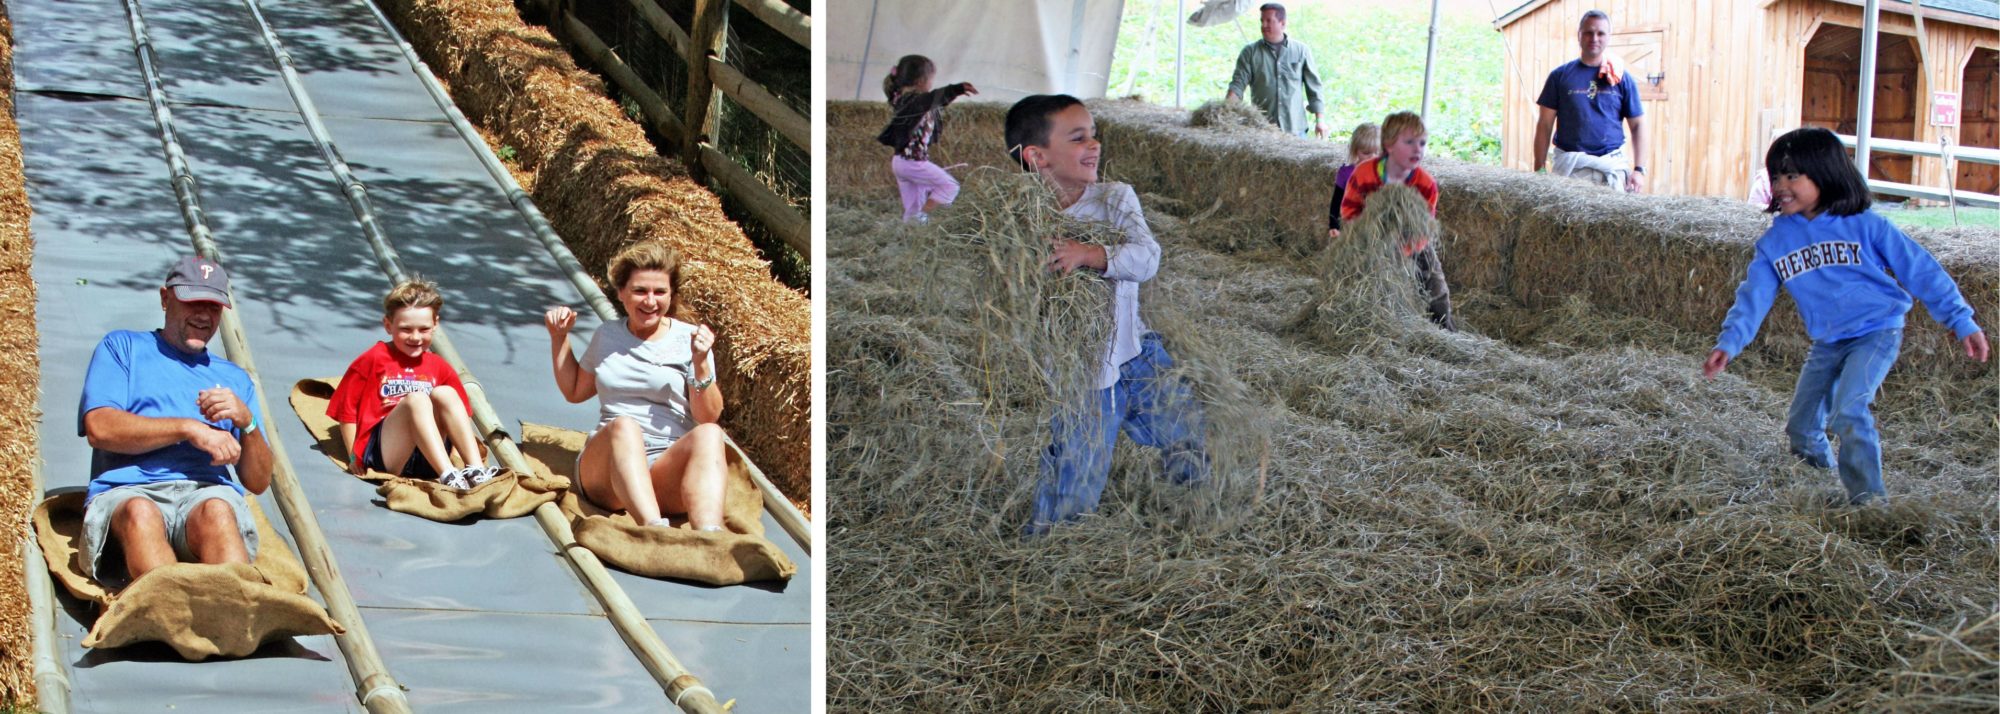 fun in the hay